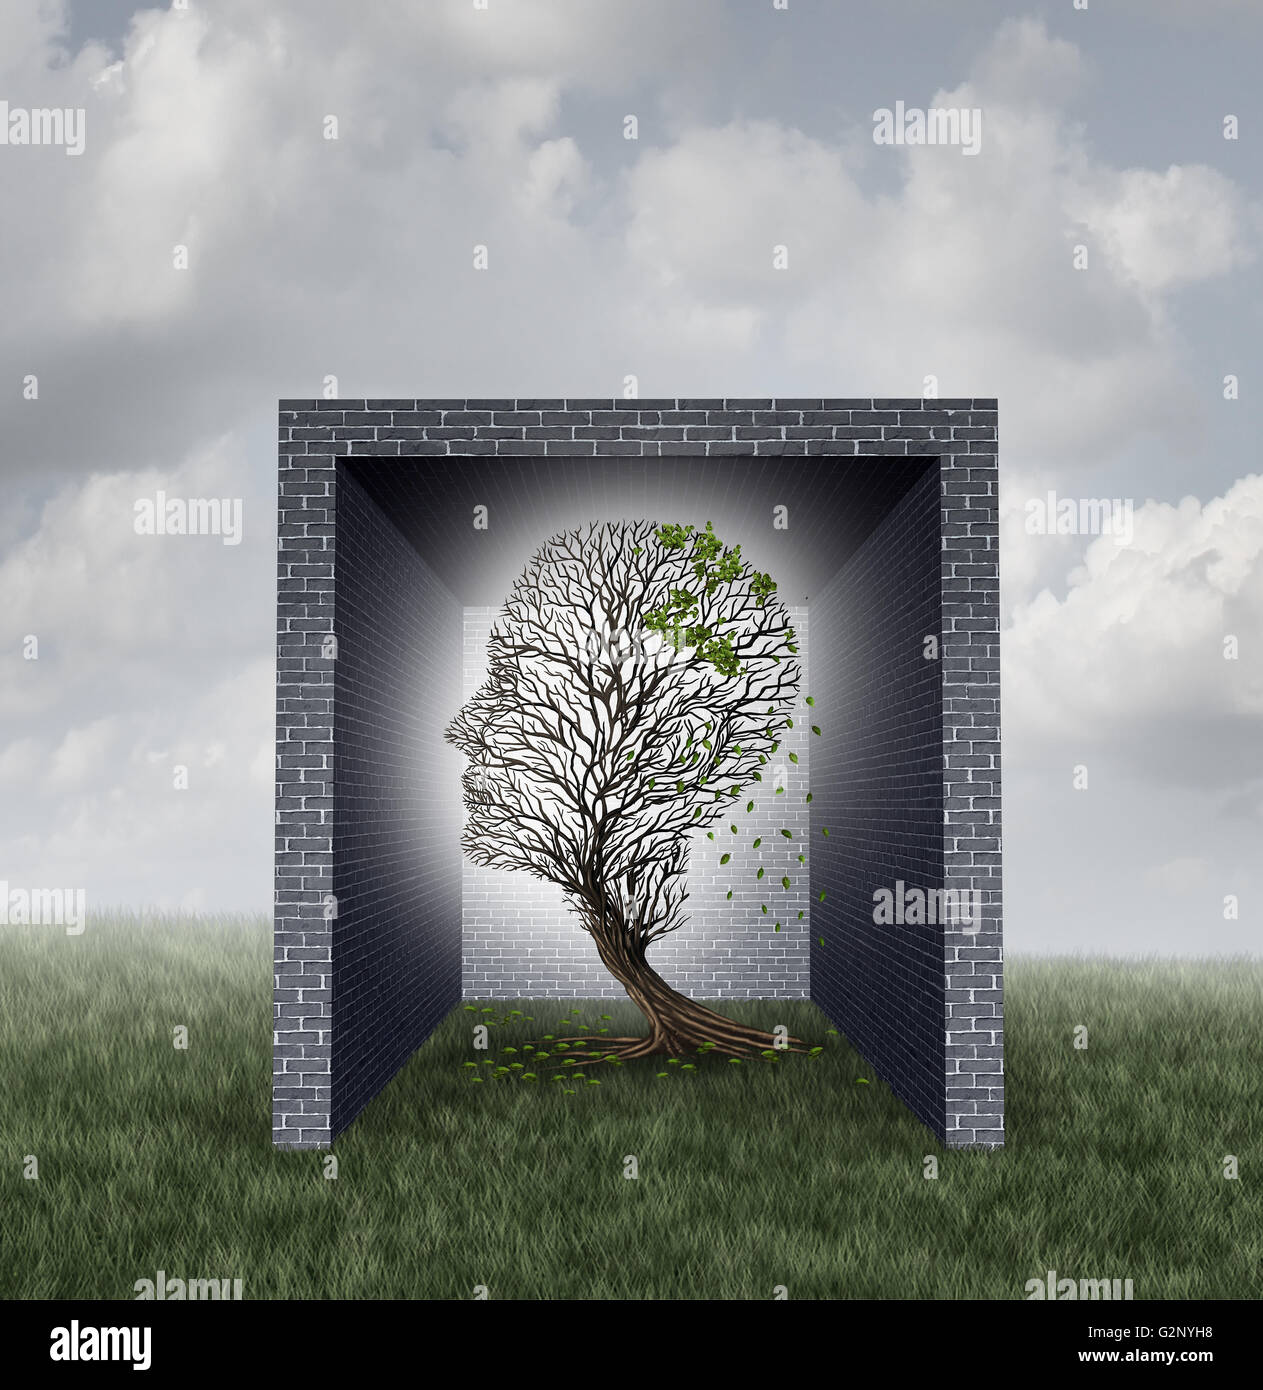 Emotionalen Mauern psychologischen Konzept als Baum geformt, wie ein menschlicher Kopf verlieren als Metapher für Gefühle und soziale Isolation Symbol mit 3D Abbildung Elemente innerhalb einer gemauerten Wandbox verlässt. Stockfoto